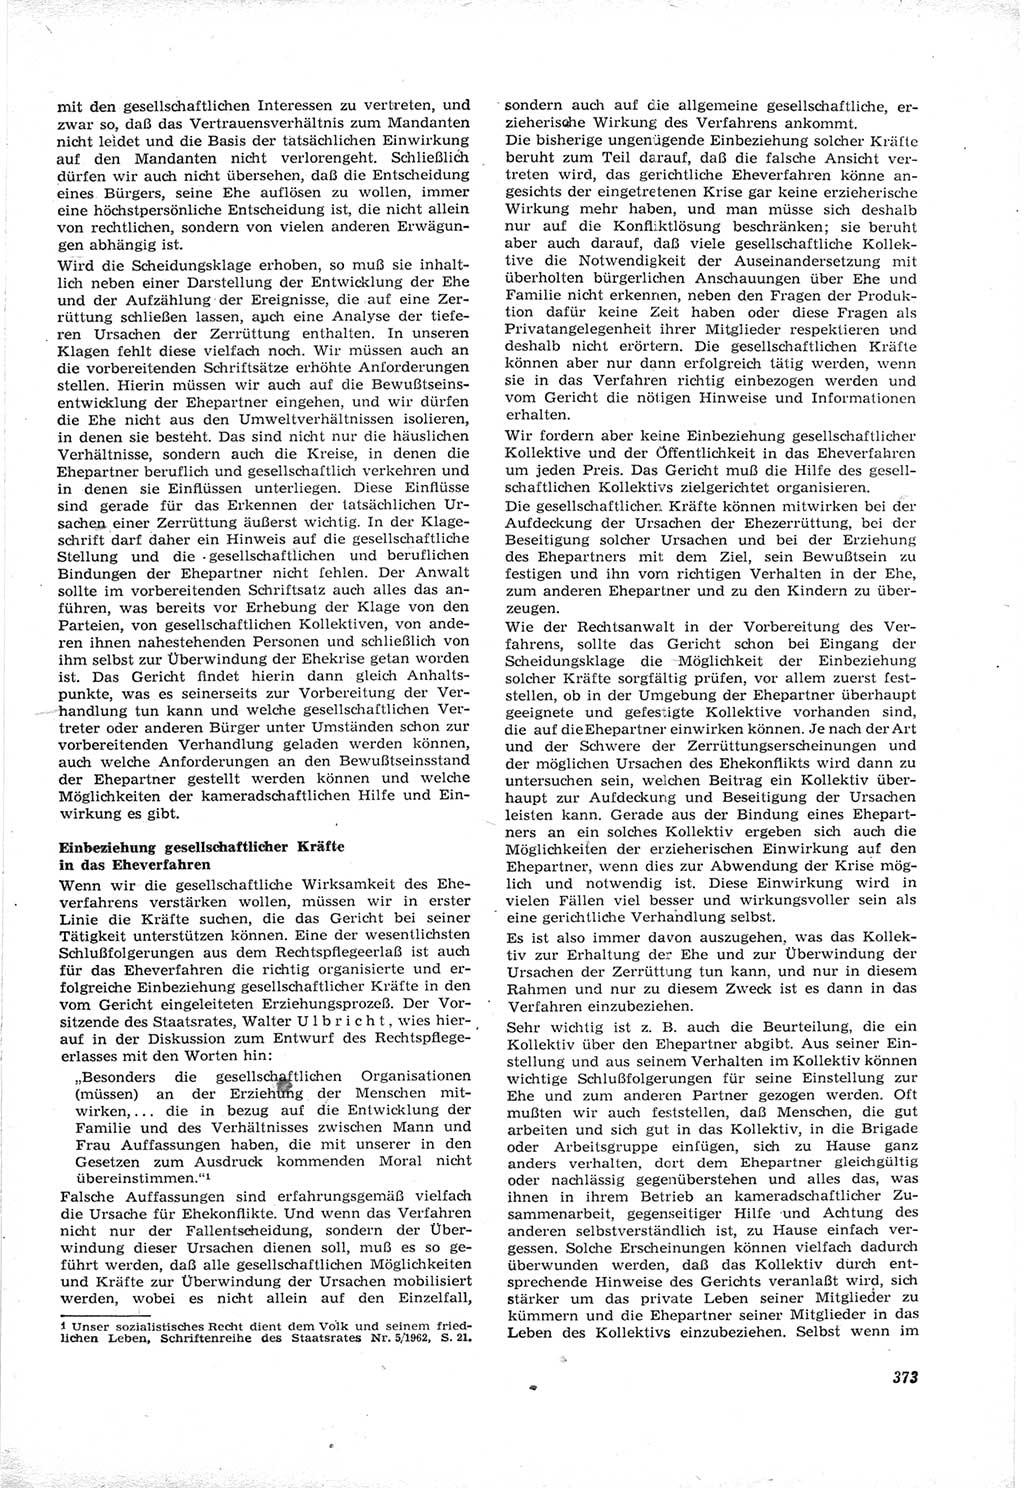 Neue Justiz (NJ), Zeitschrift für Recht und Rechtswissenschaft [Deutsche Demokratische Republik (DDR)], 17. Jahrgang 1963, Seite 373 (NJ DDR 1963, S. 373)